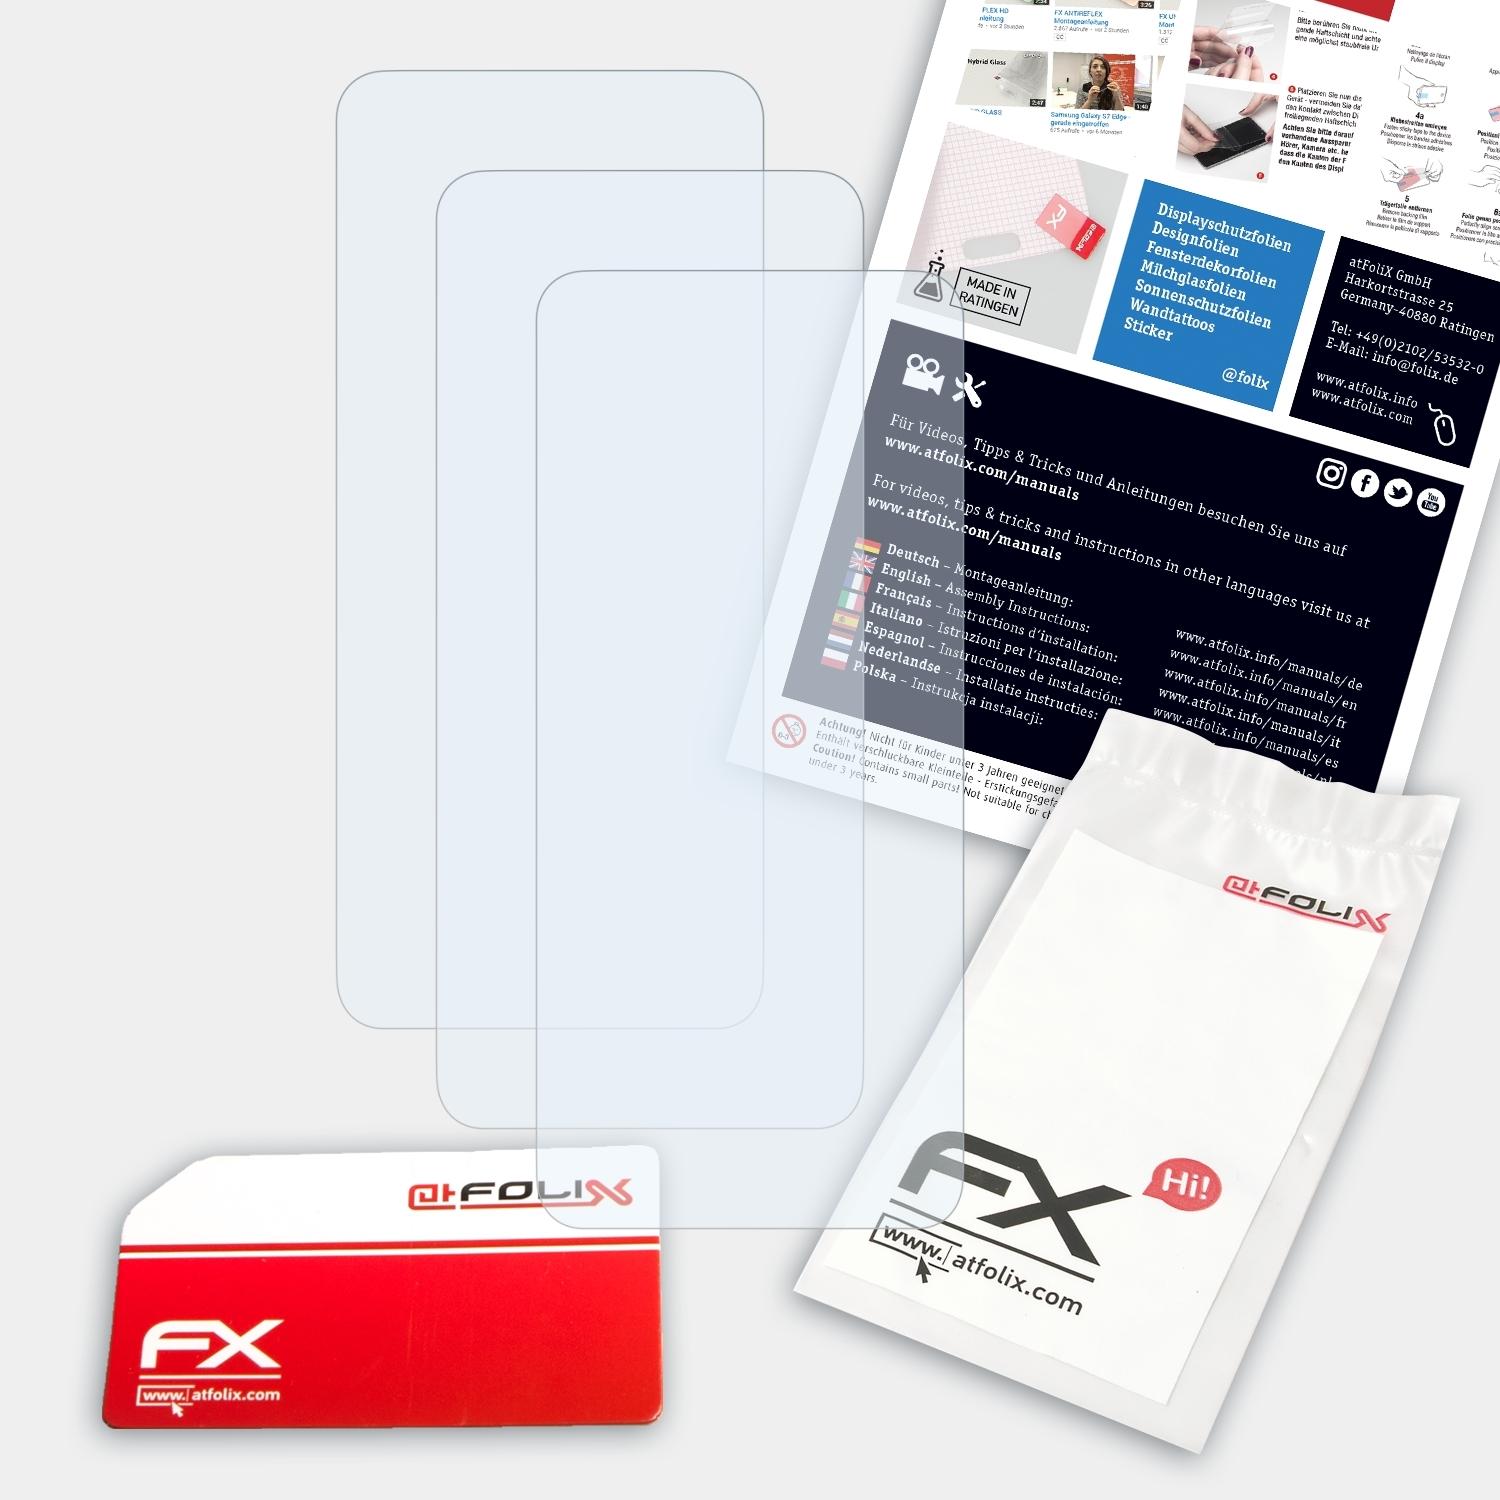 ATFOLIX 3x Xtreme) Displayschutz(für Soul Allview X6 FX-Clear